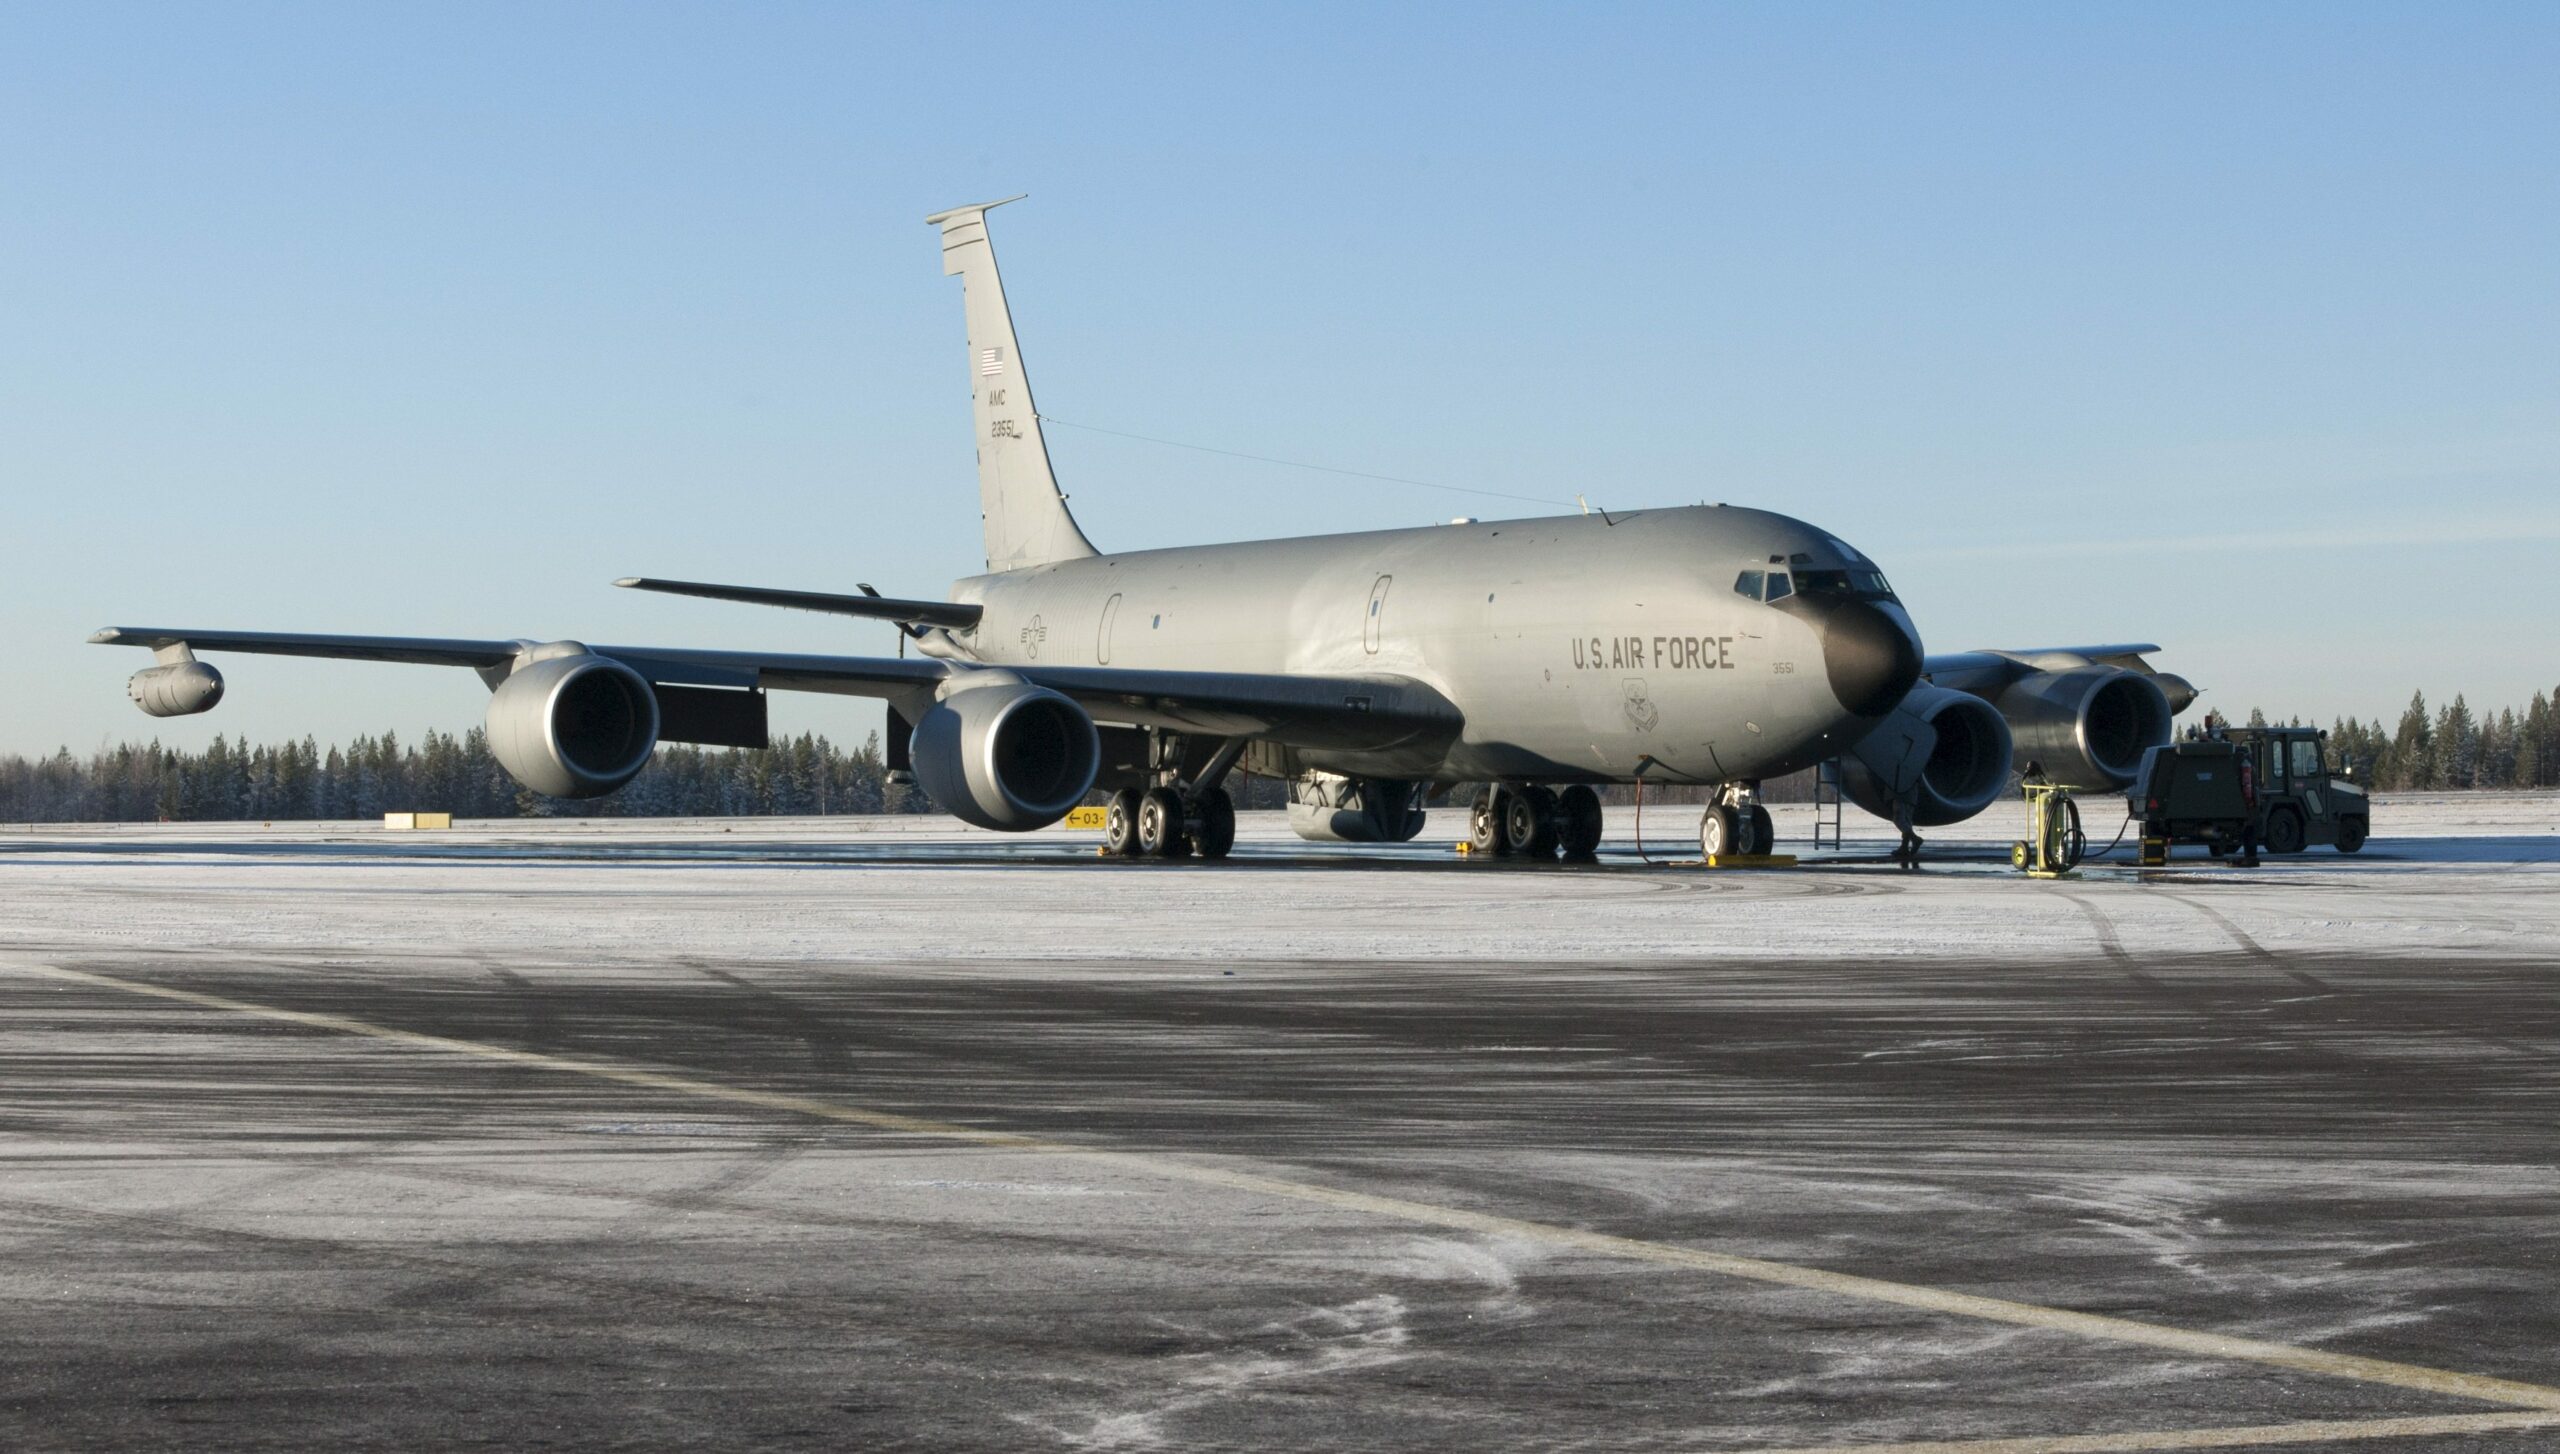 Yhdysvaltain sotilaskoneet tankkaavat Suomen ilmatilassa | Verkkouutiset